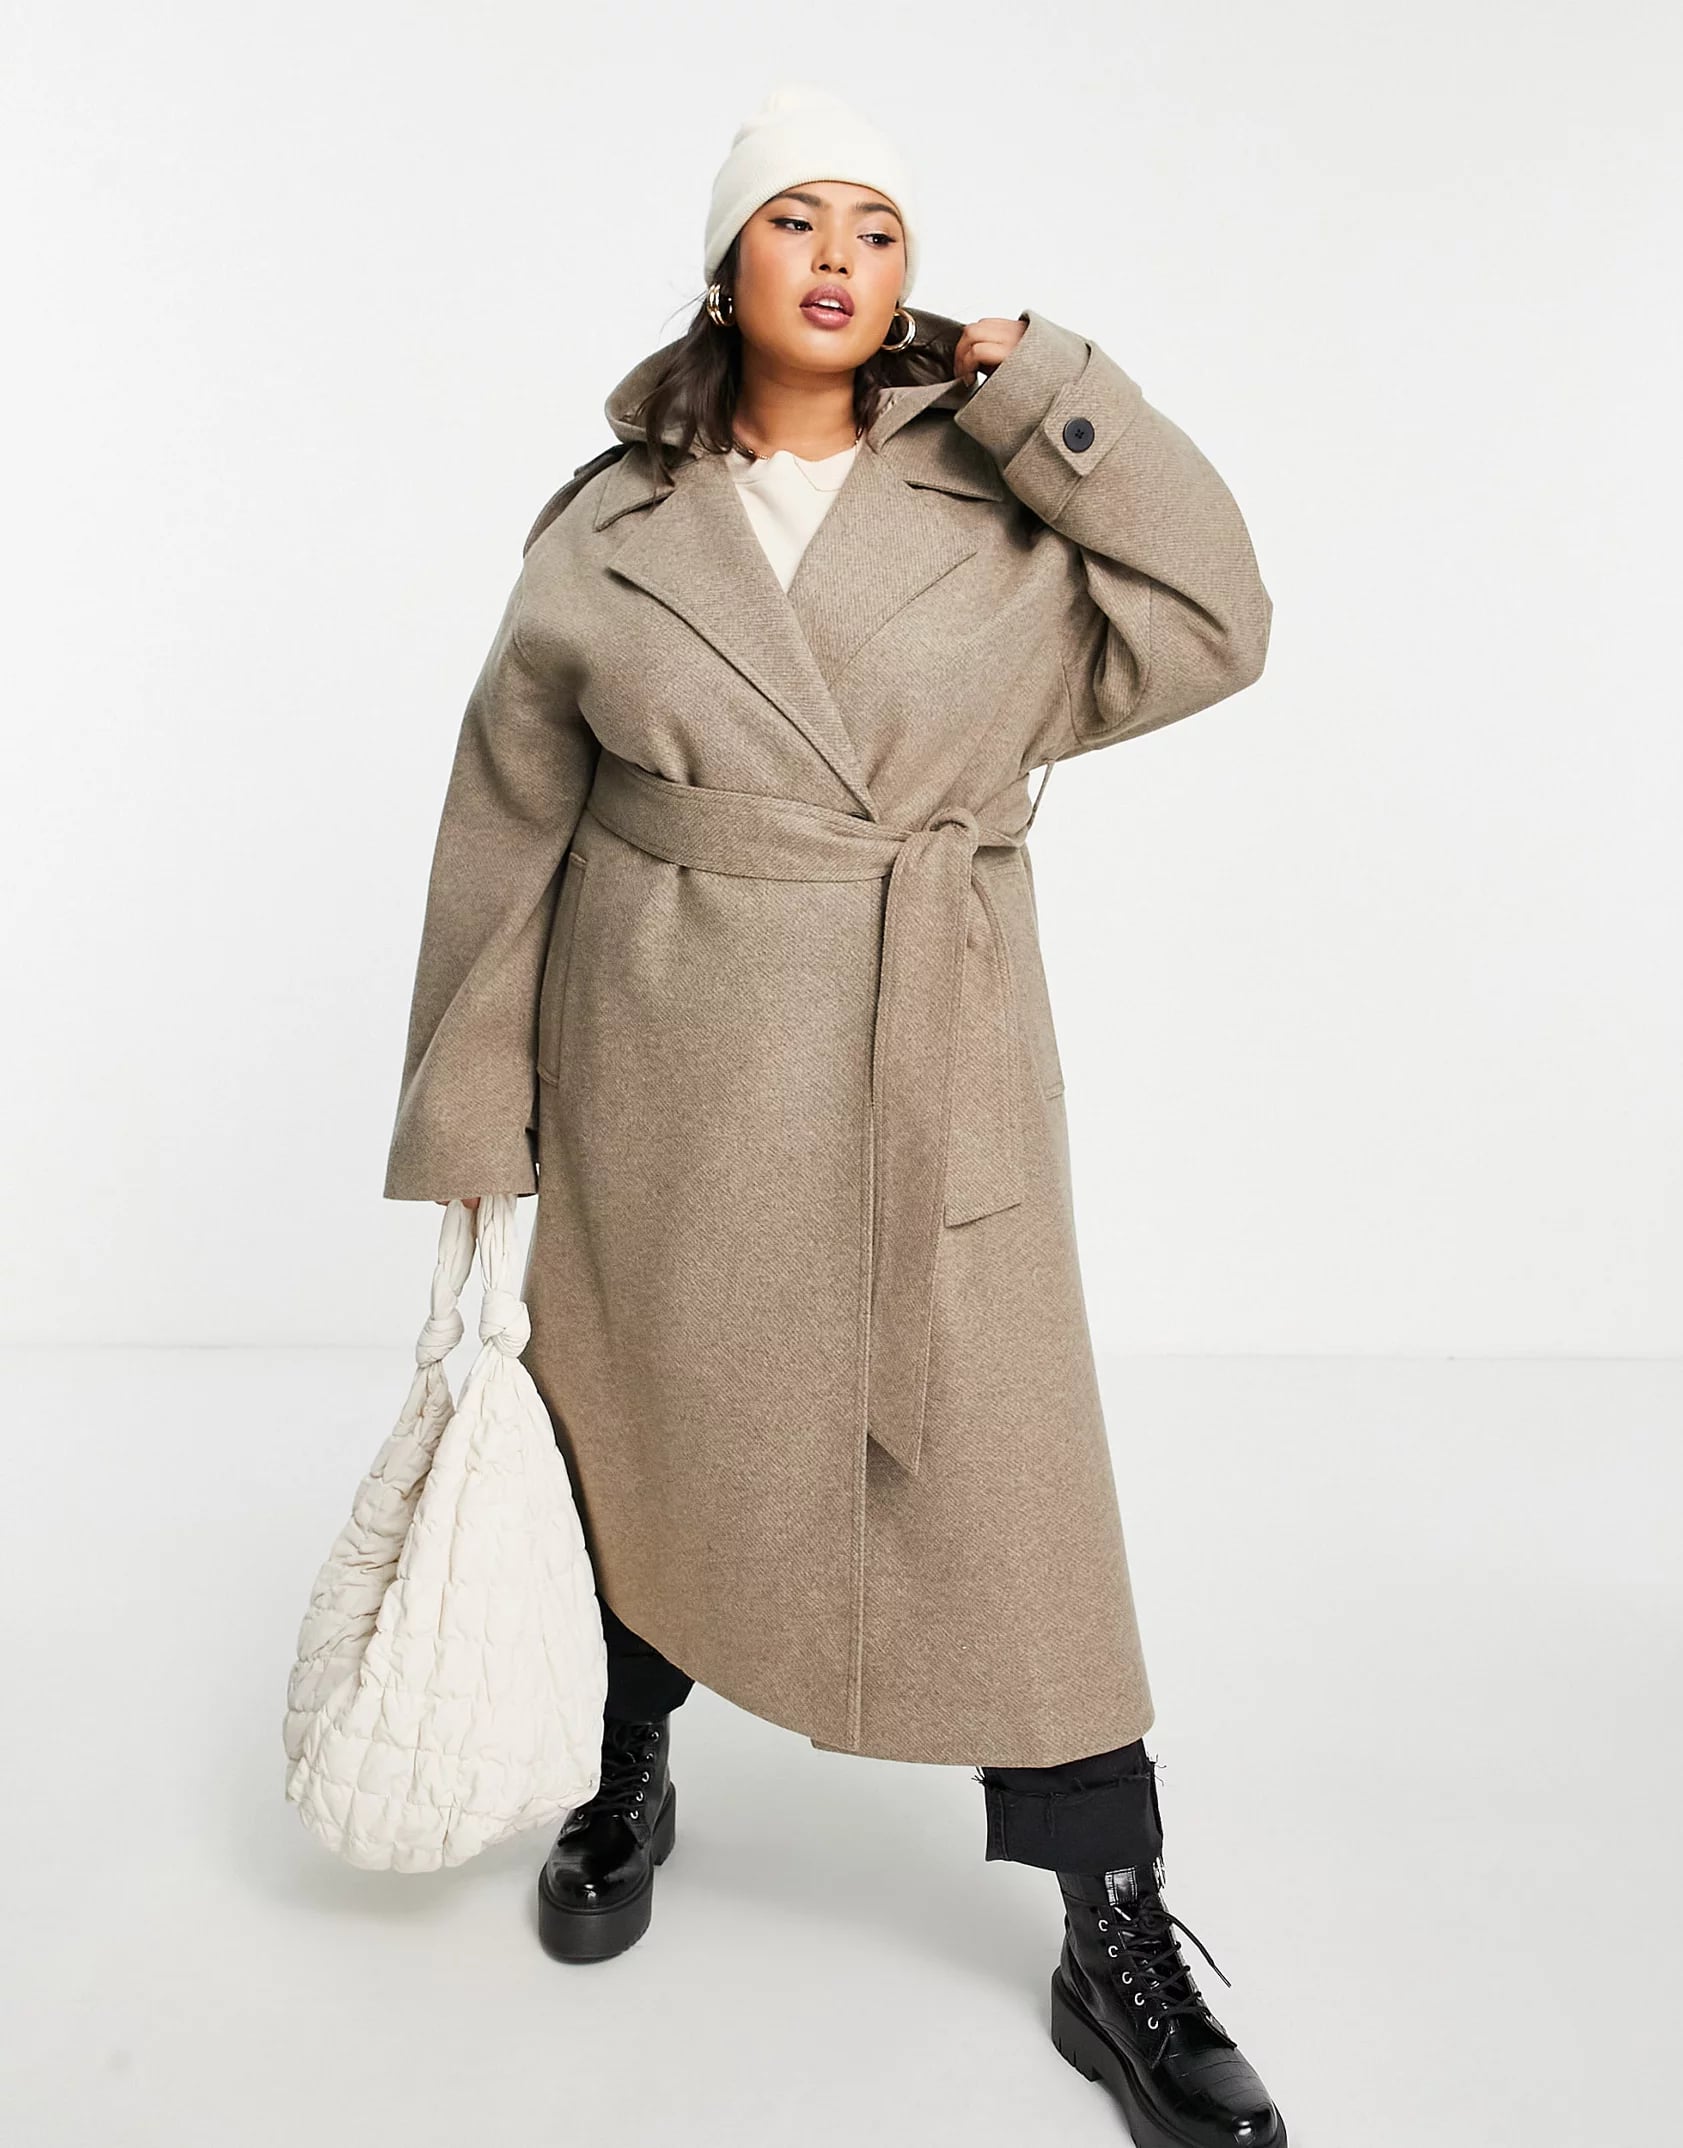 15 Best Plus-Size Winter Coats For Women in 2022